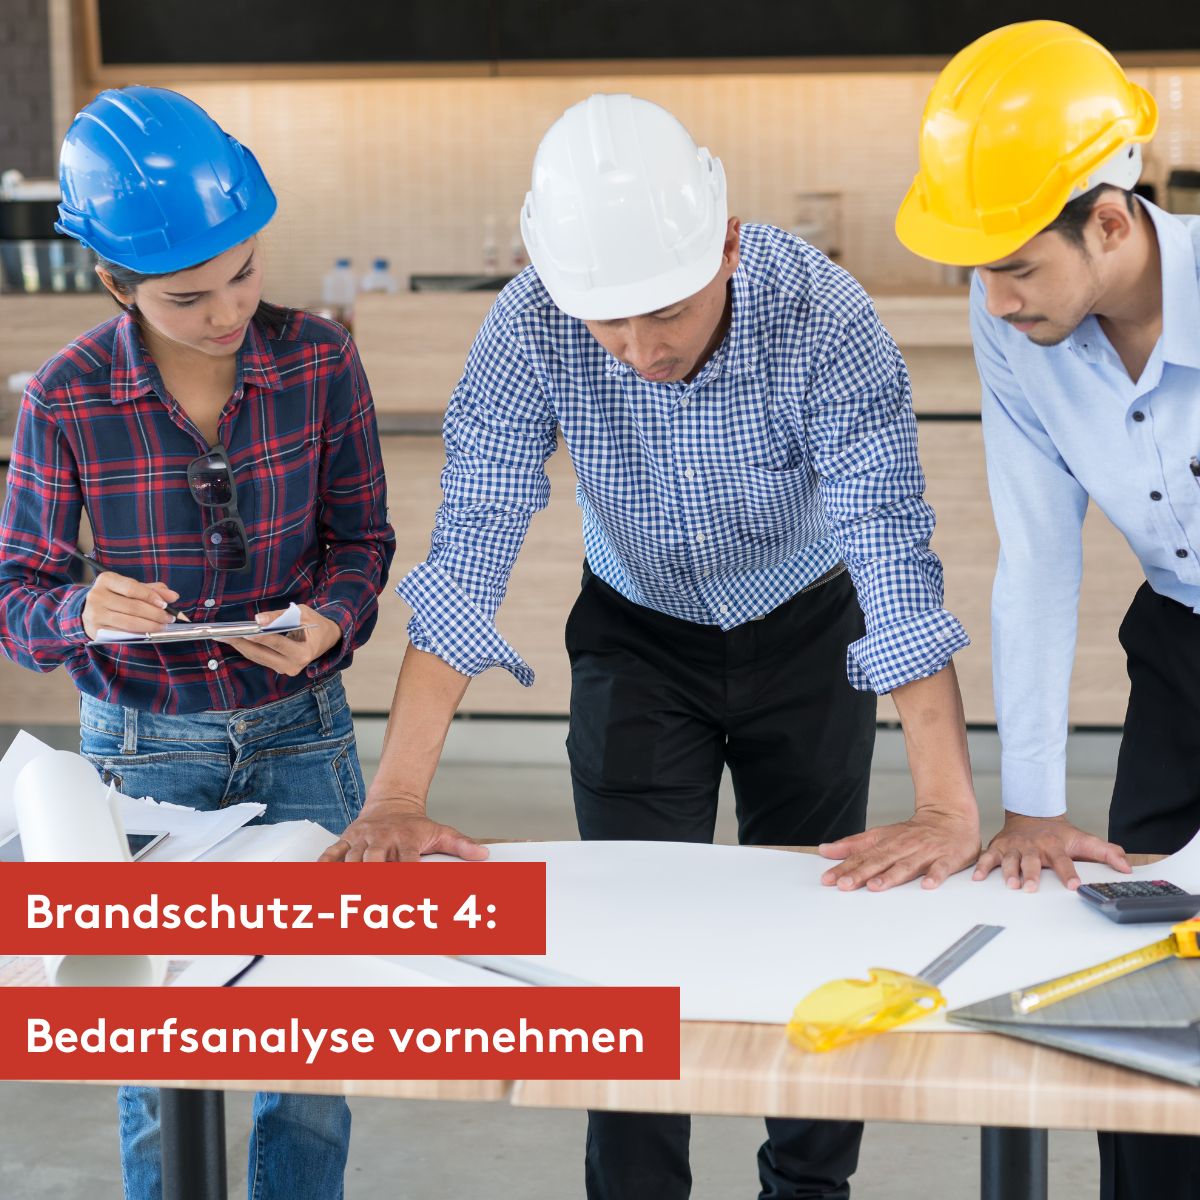 KLA Brandschutz-Fact 4